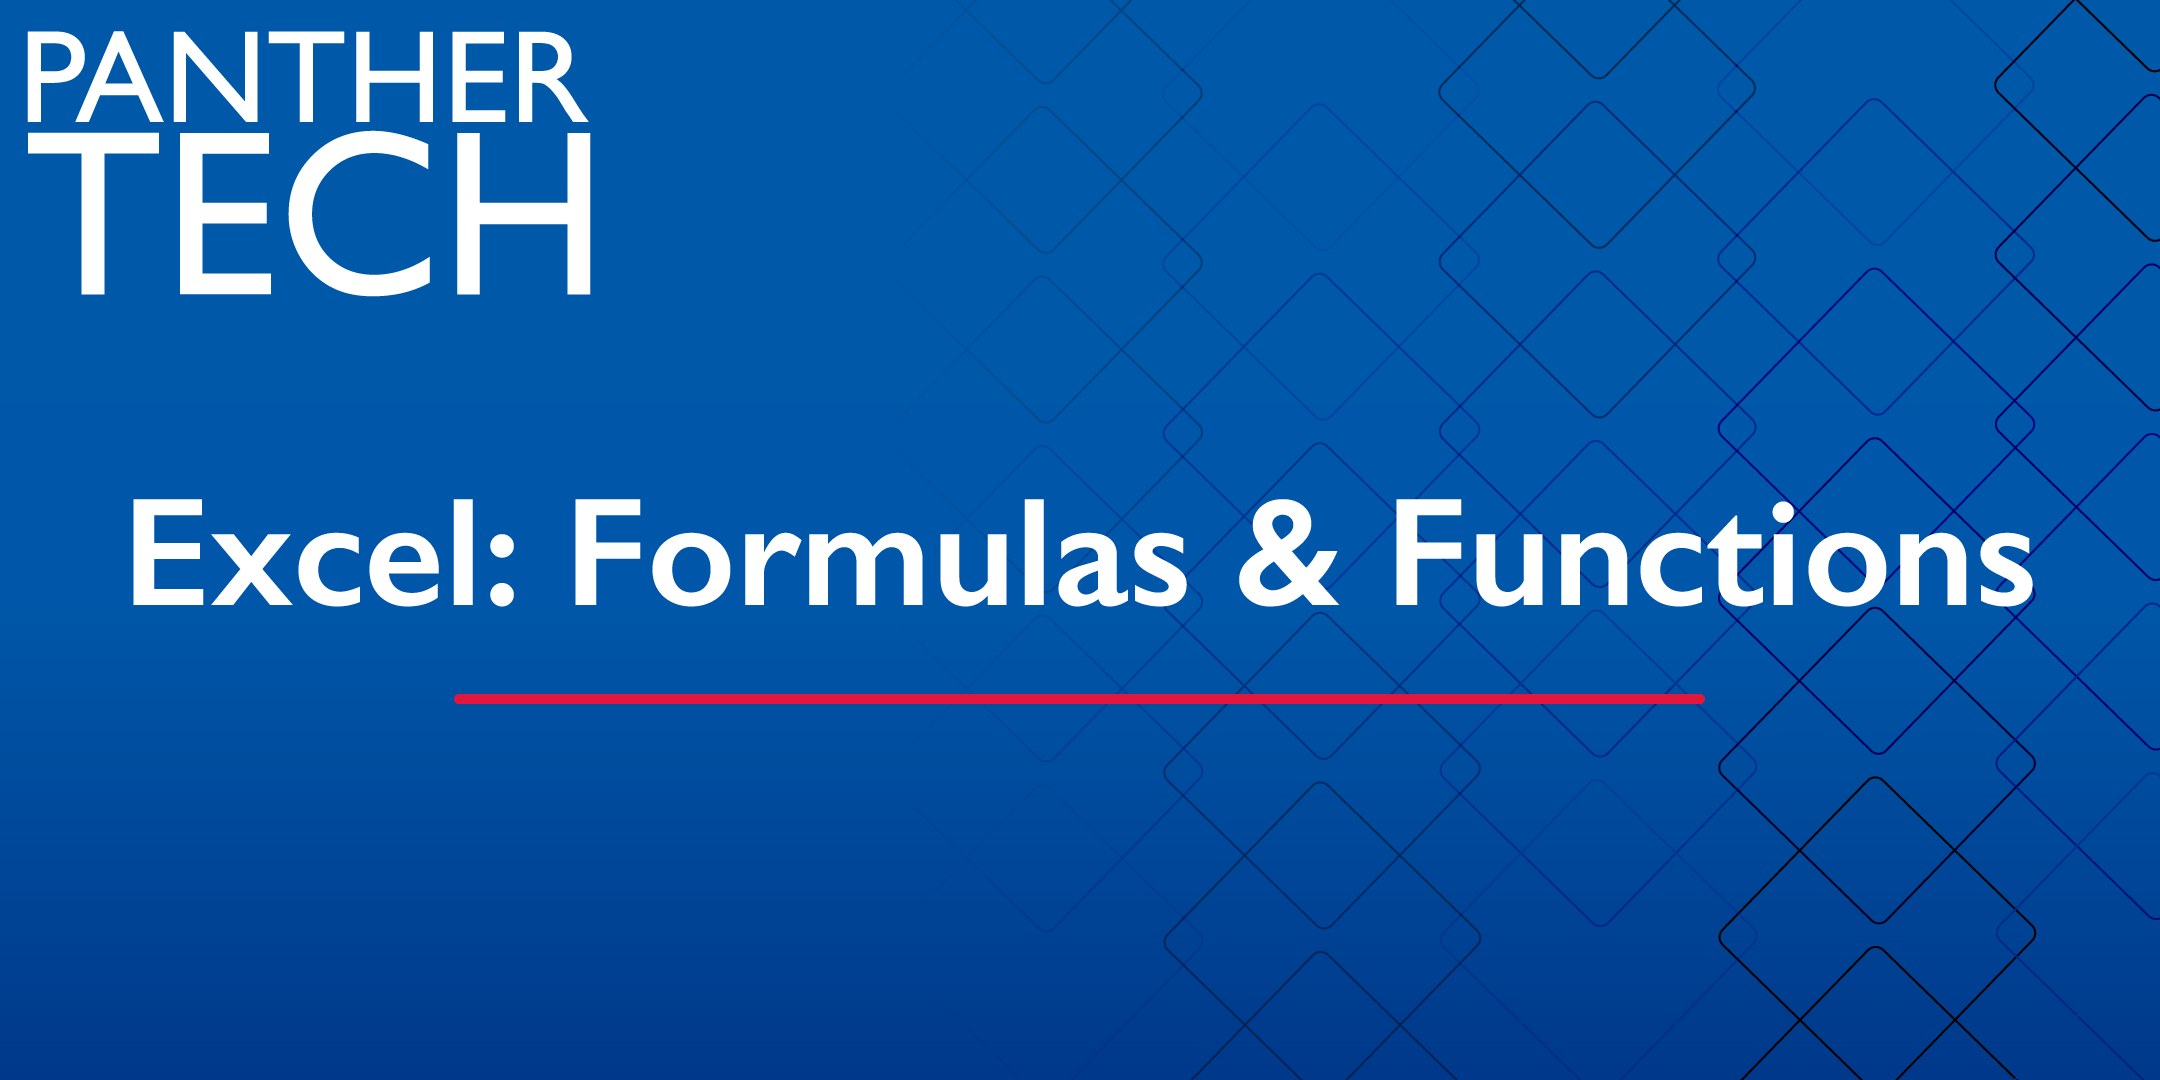 Excel: Formulas & Functions - Atlanta - Classroom South 403/405